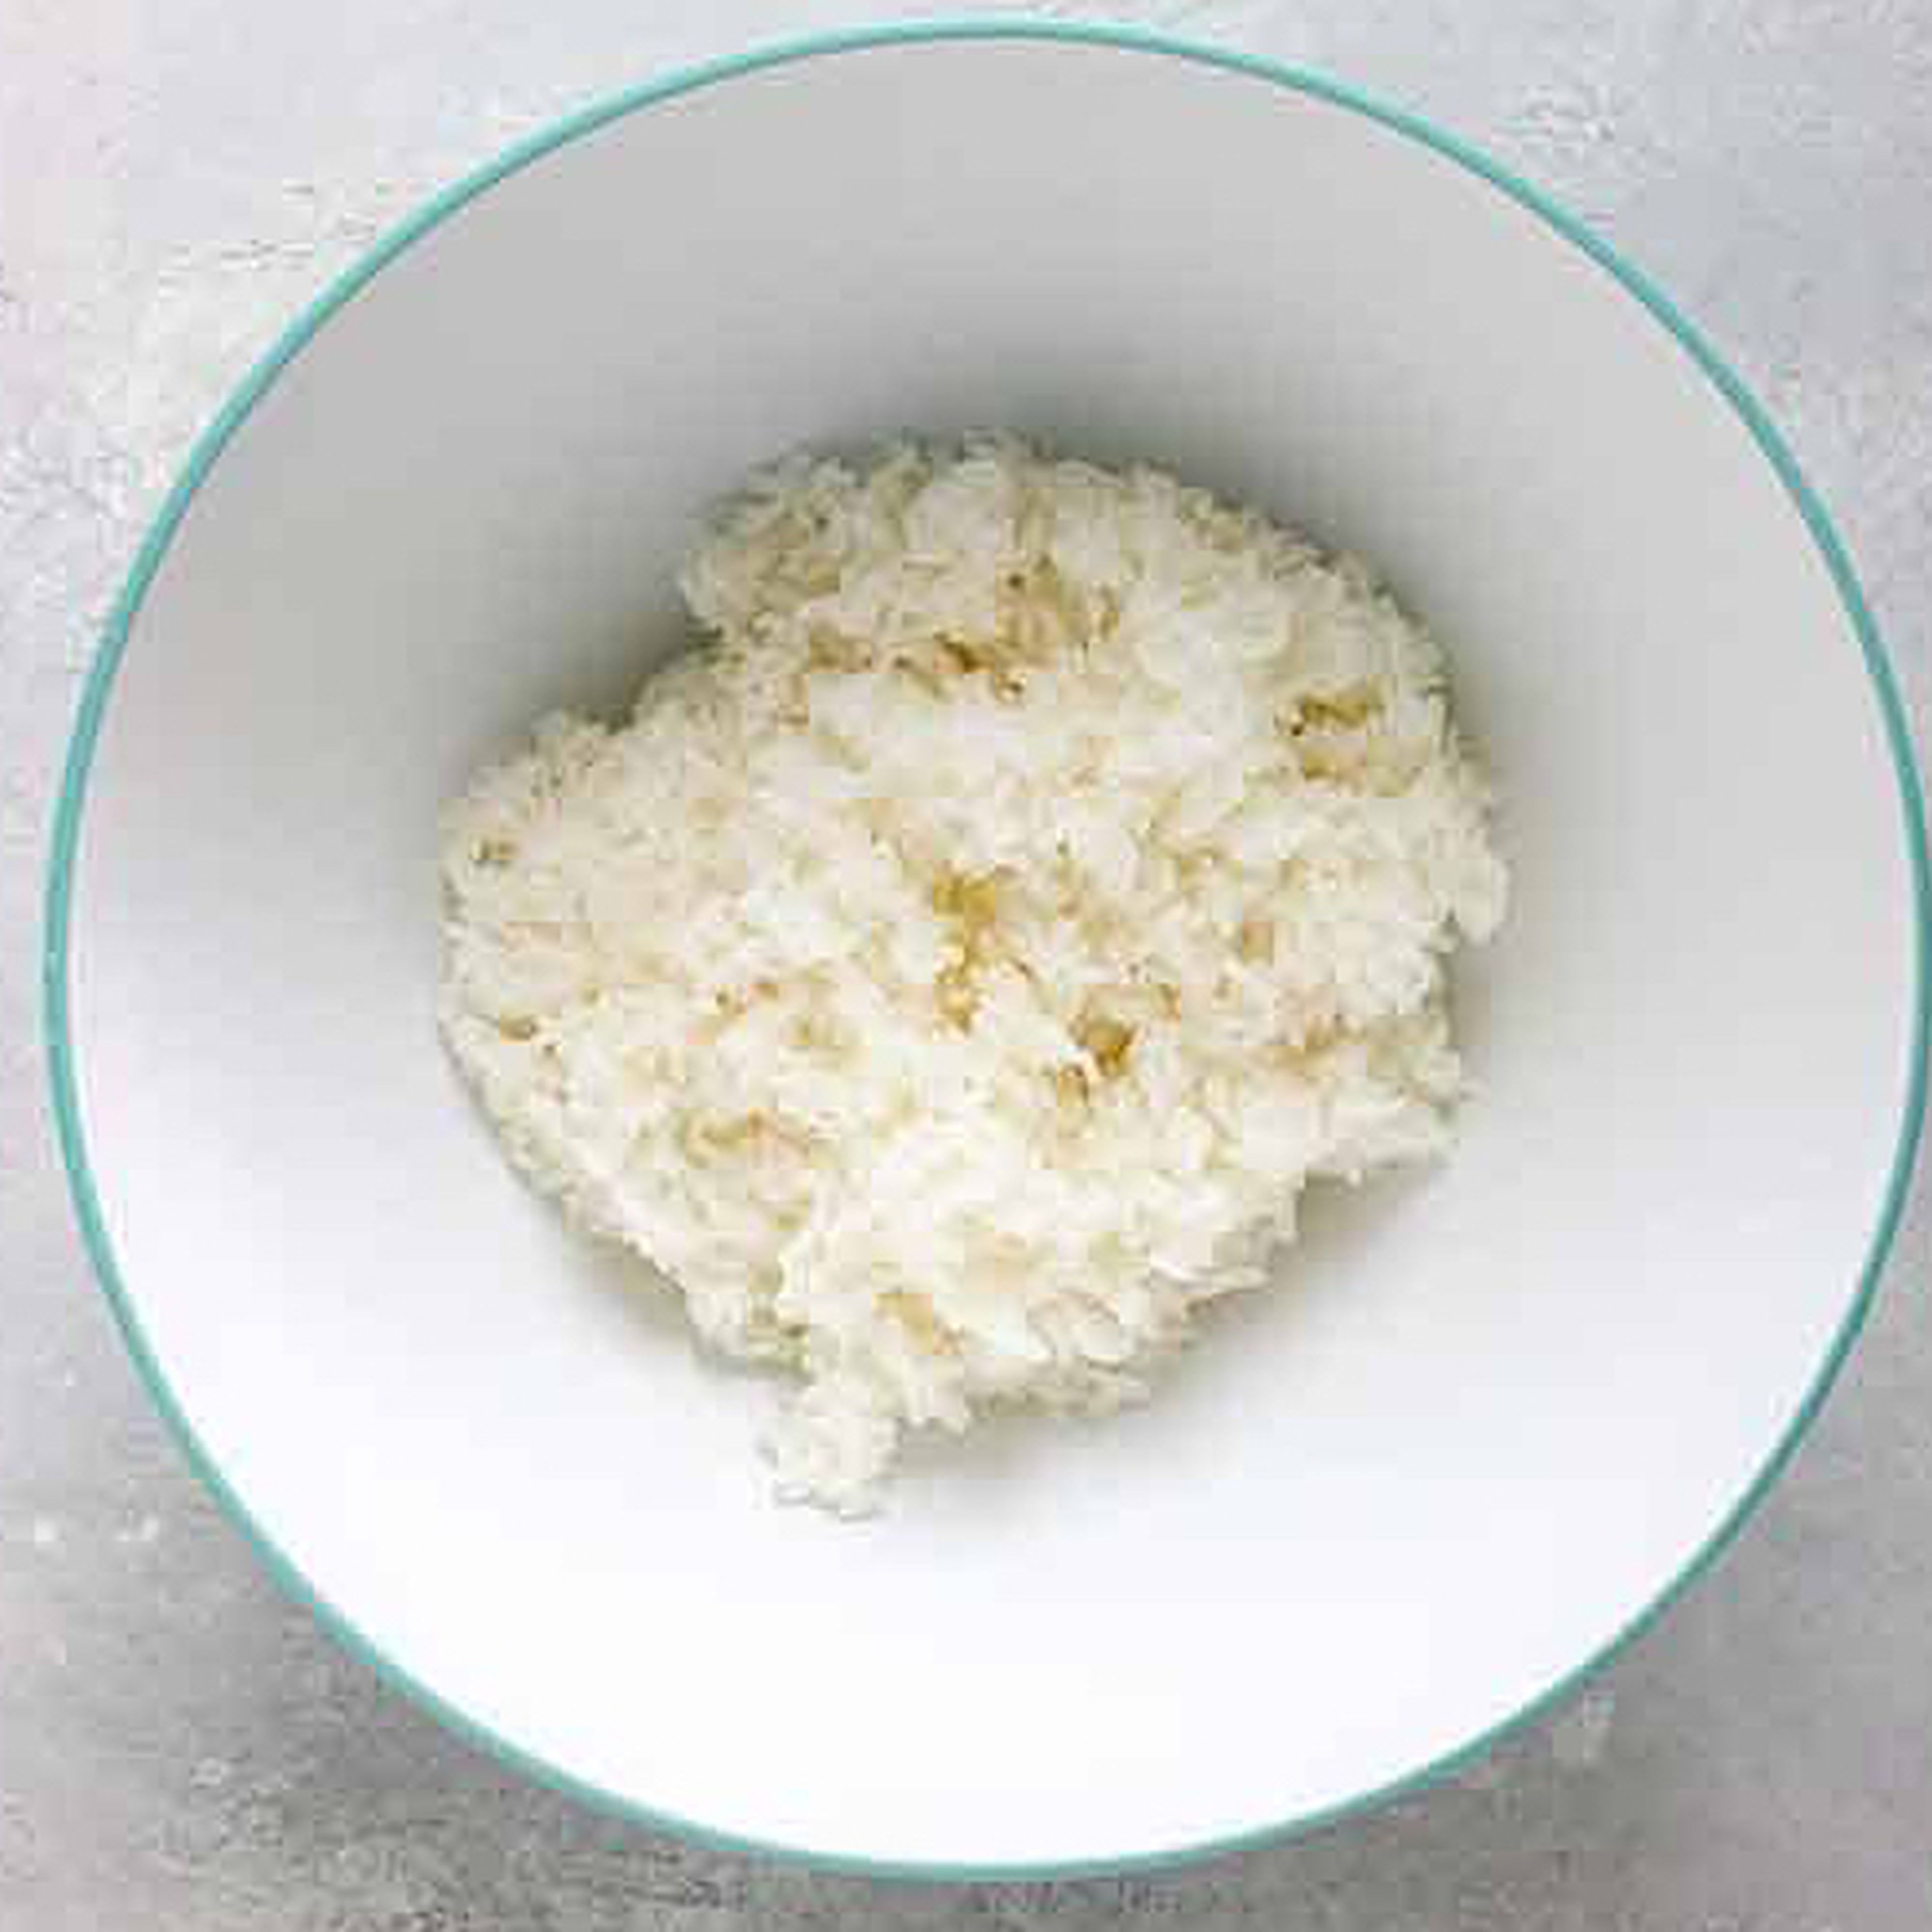 Prepare / boil the rice